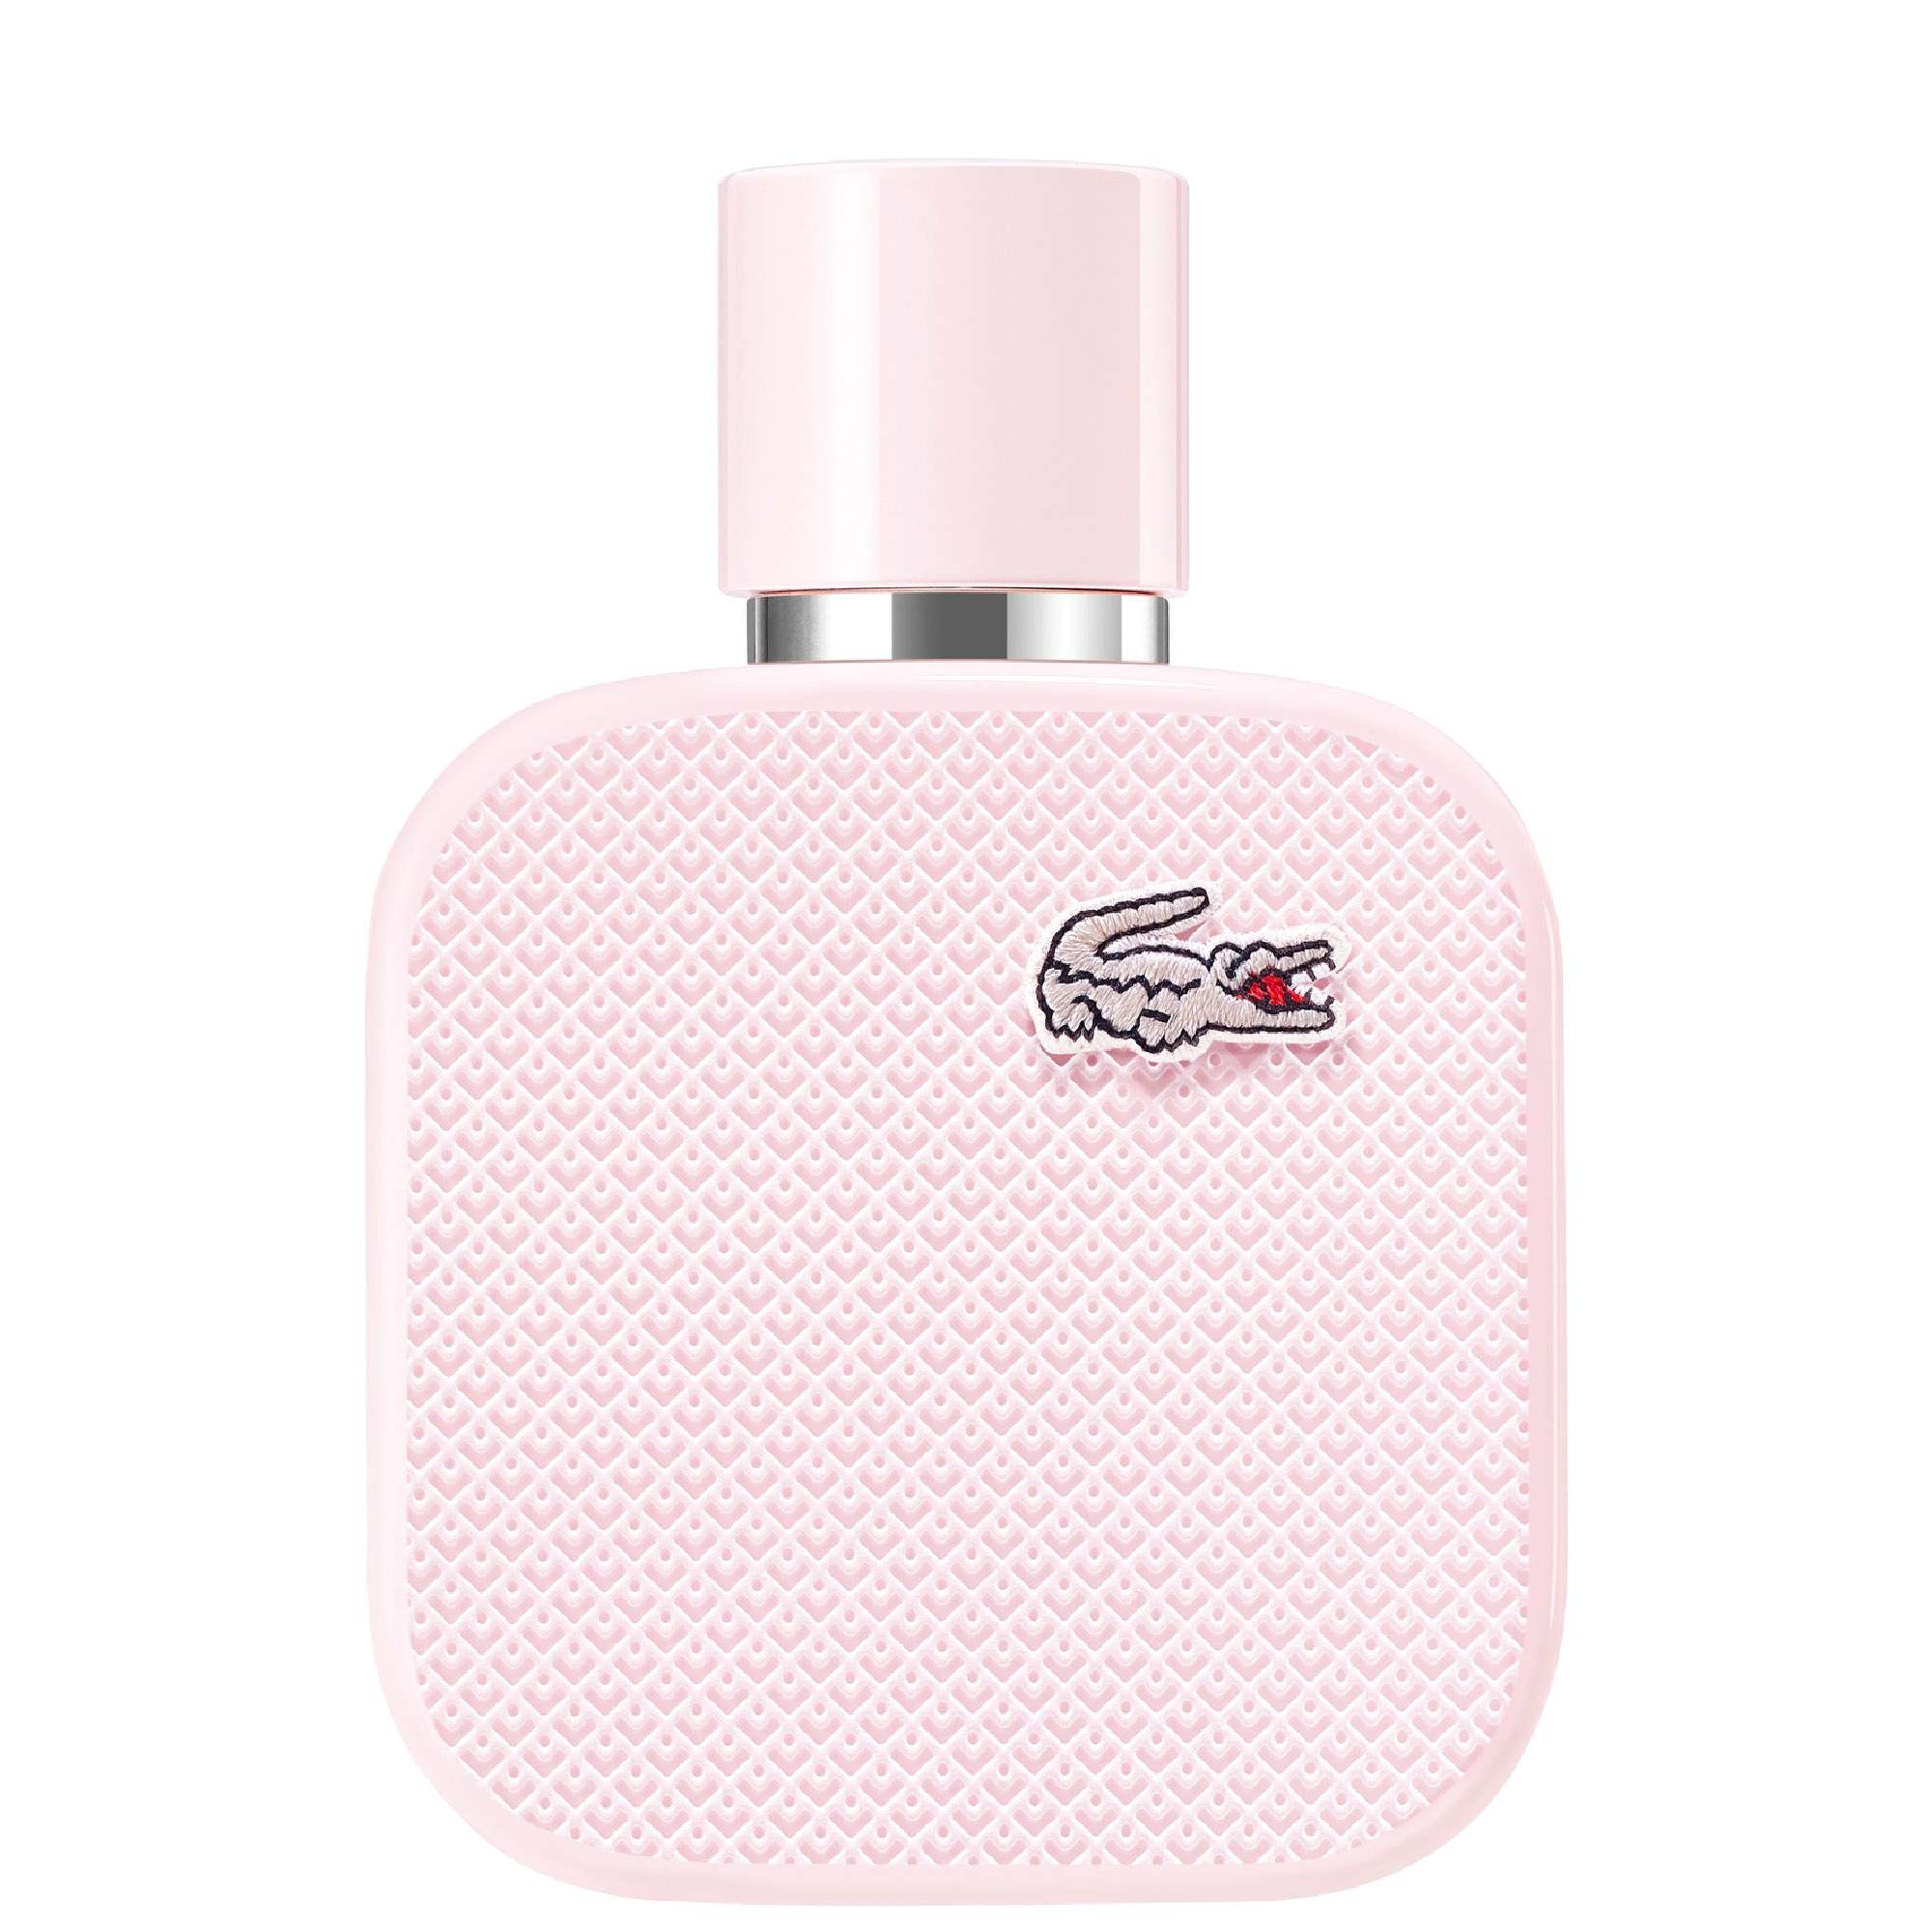 Image of Lacoste L.12.12 Rose Eau de Parfum Spray 50ml